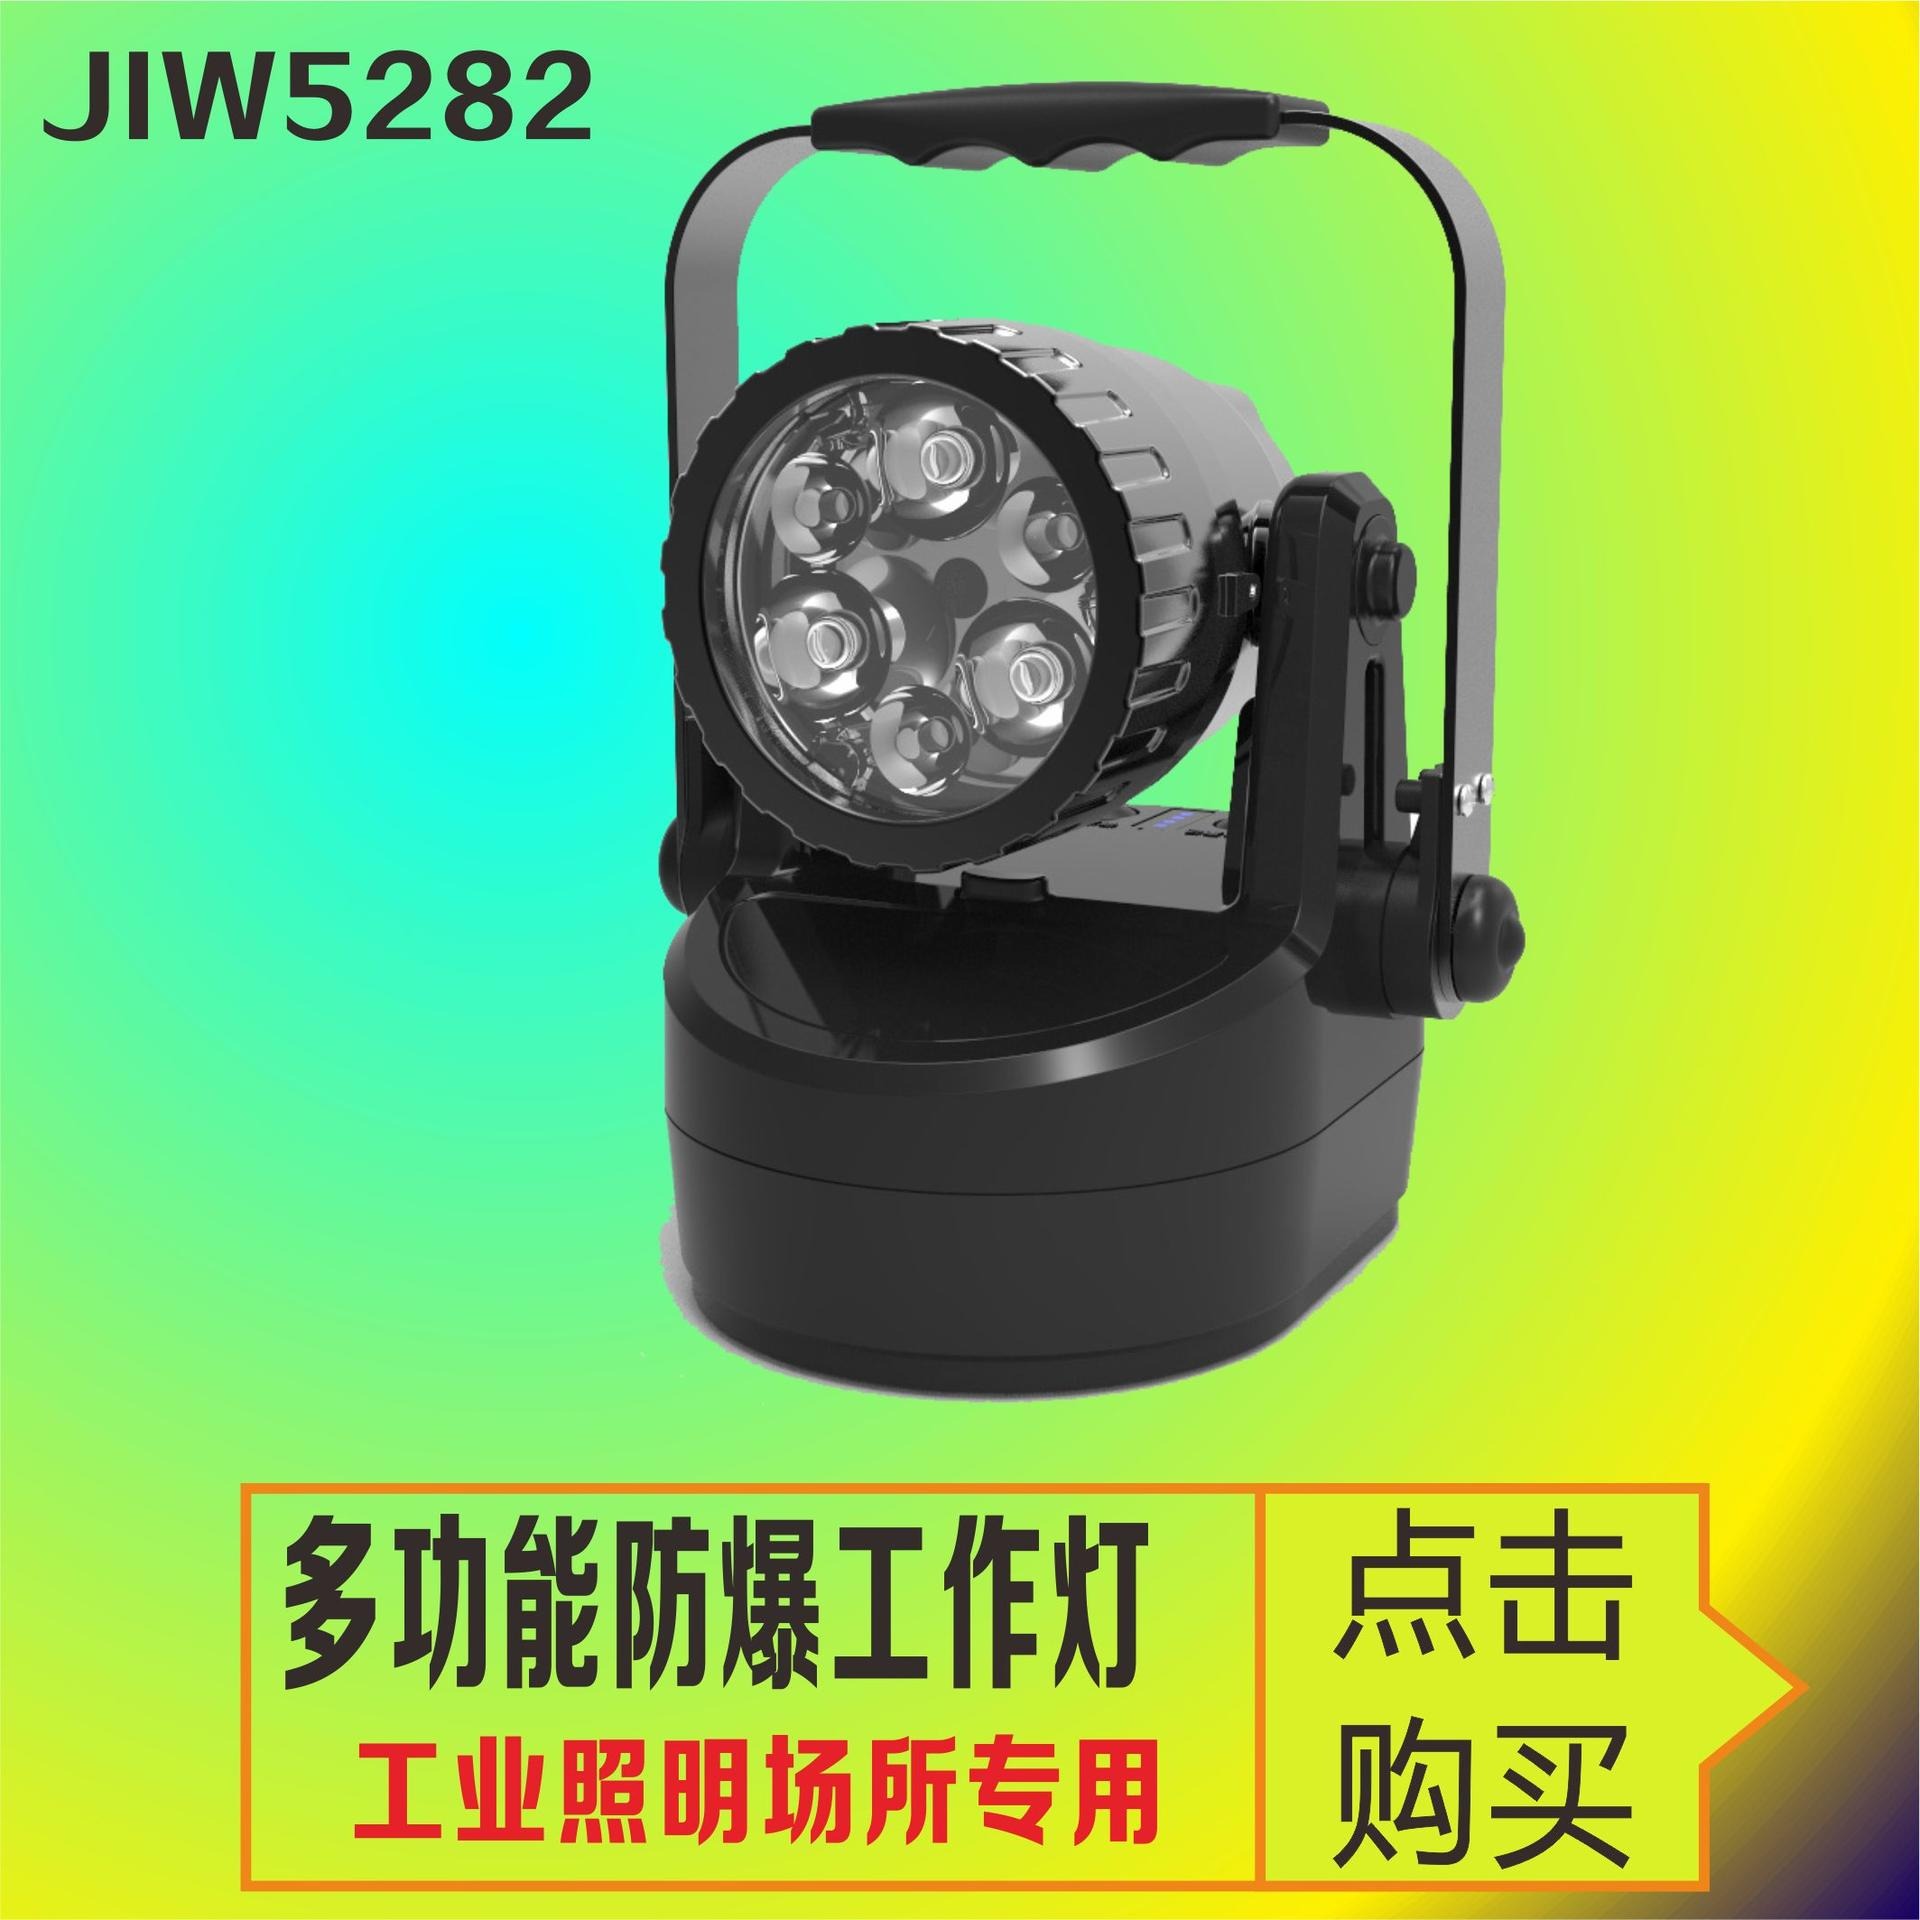 洲创电气夜间野外作业照明灯 JIW5282轻便式多功能强光灯 防爆检修磁力吸附灯 JIW5281手提探照灯图片